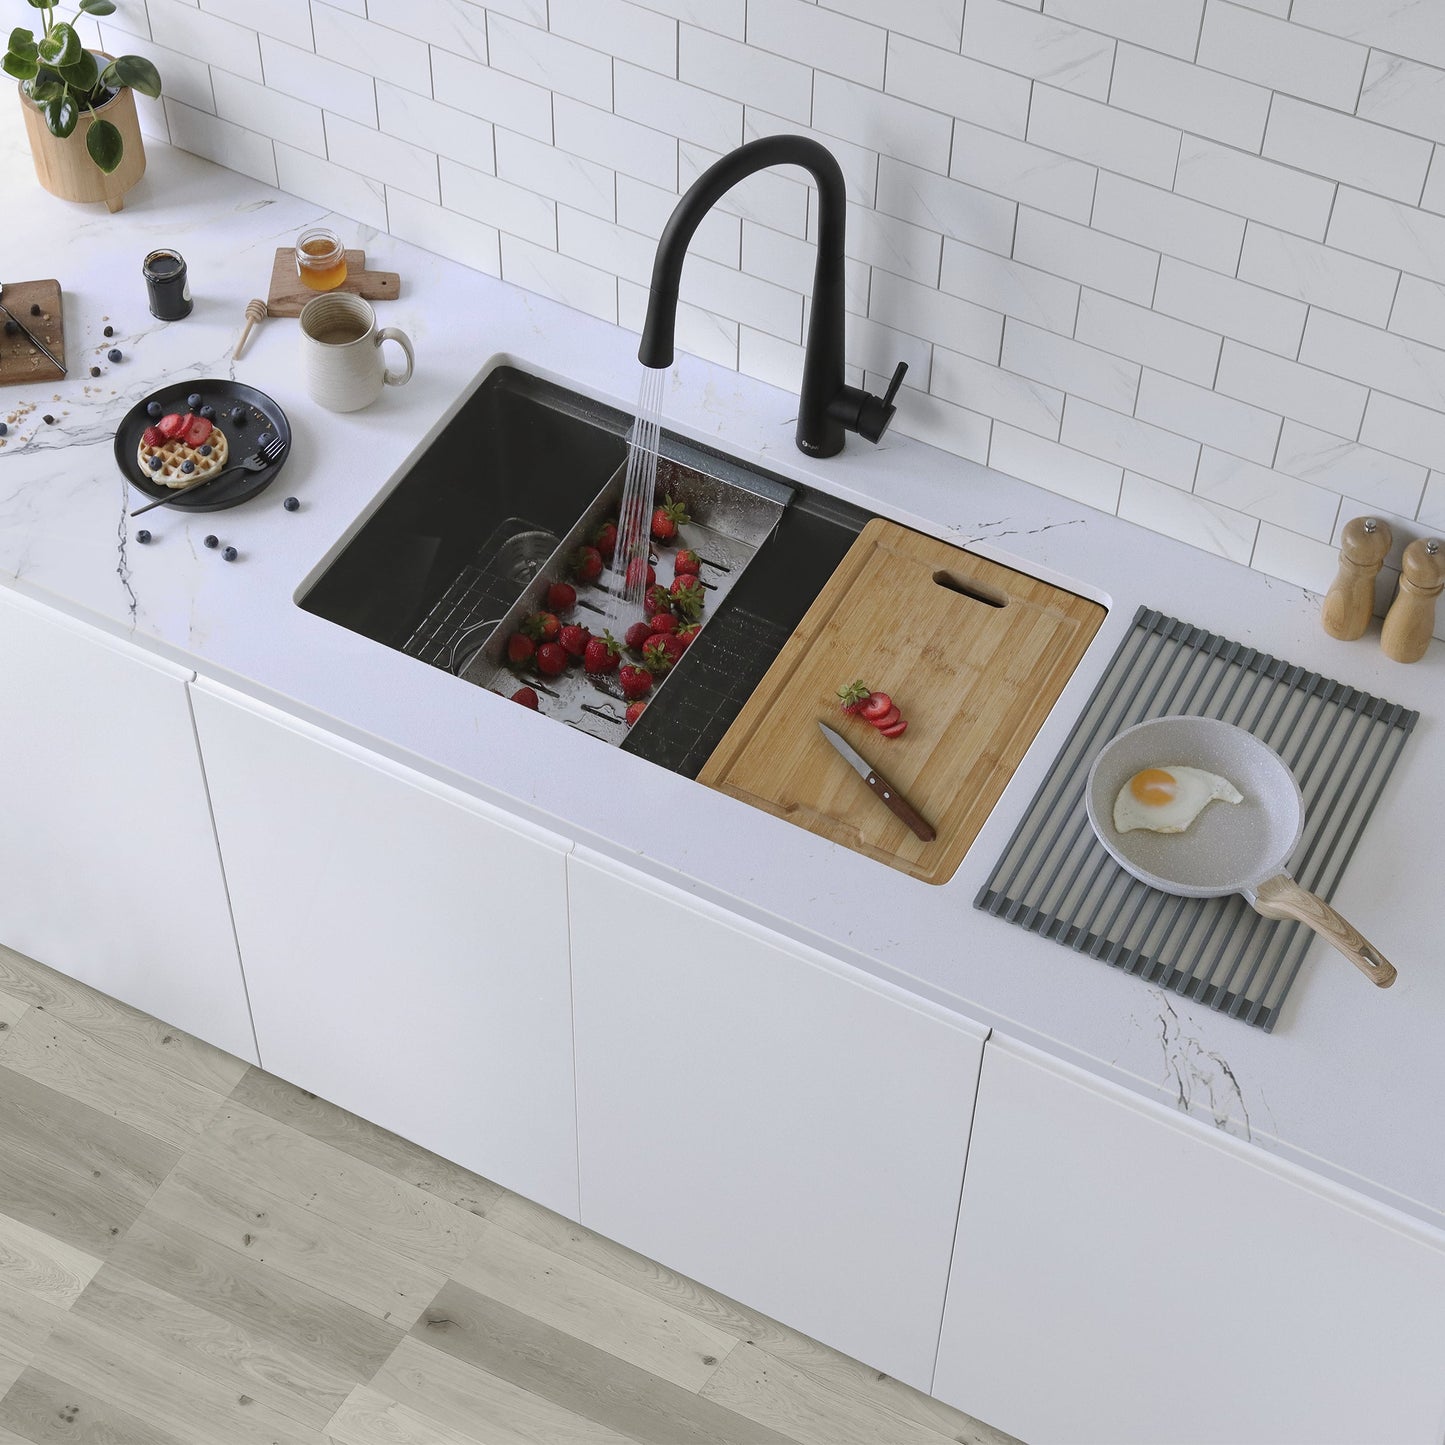 Stylish VERSA 33" 33 inch Workstation Single Bowl Undermount 16 Gauge Stainless Steel Kitchen Sink with Built in Accessories